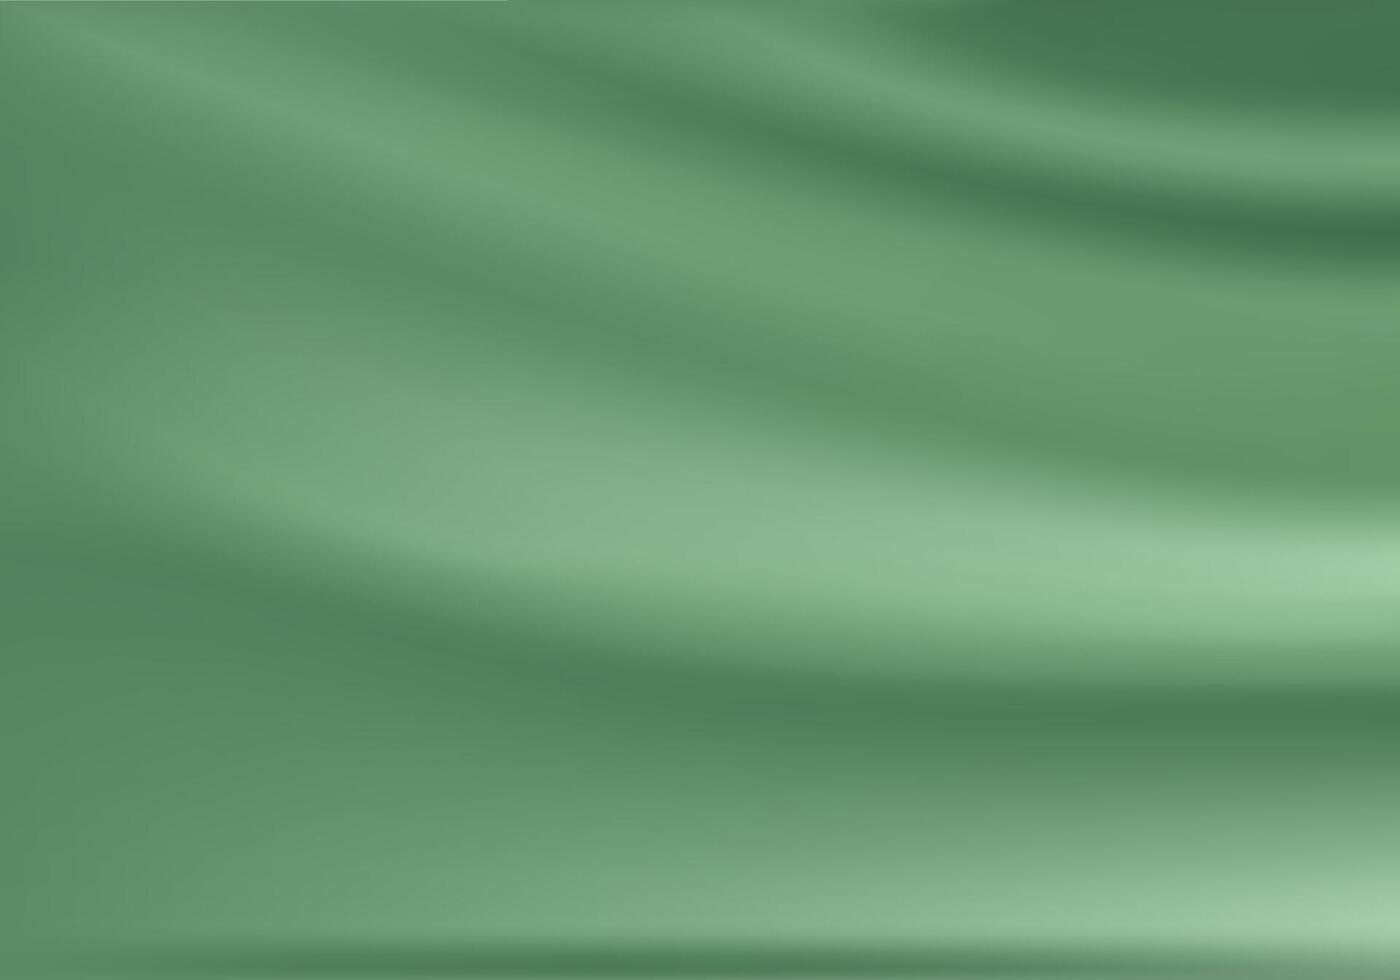 gordijn licht groente. licht groen kleding stof glad structuur oppervlakte achtergrond. glad elegant groen zijde in sepia afgezwakt. vector illustratie eps 10.